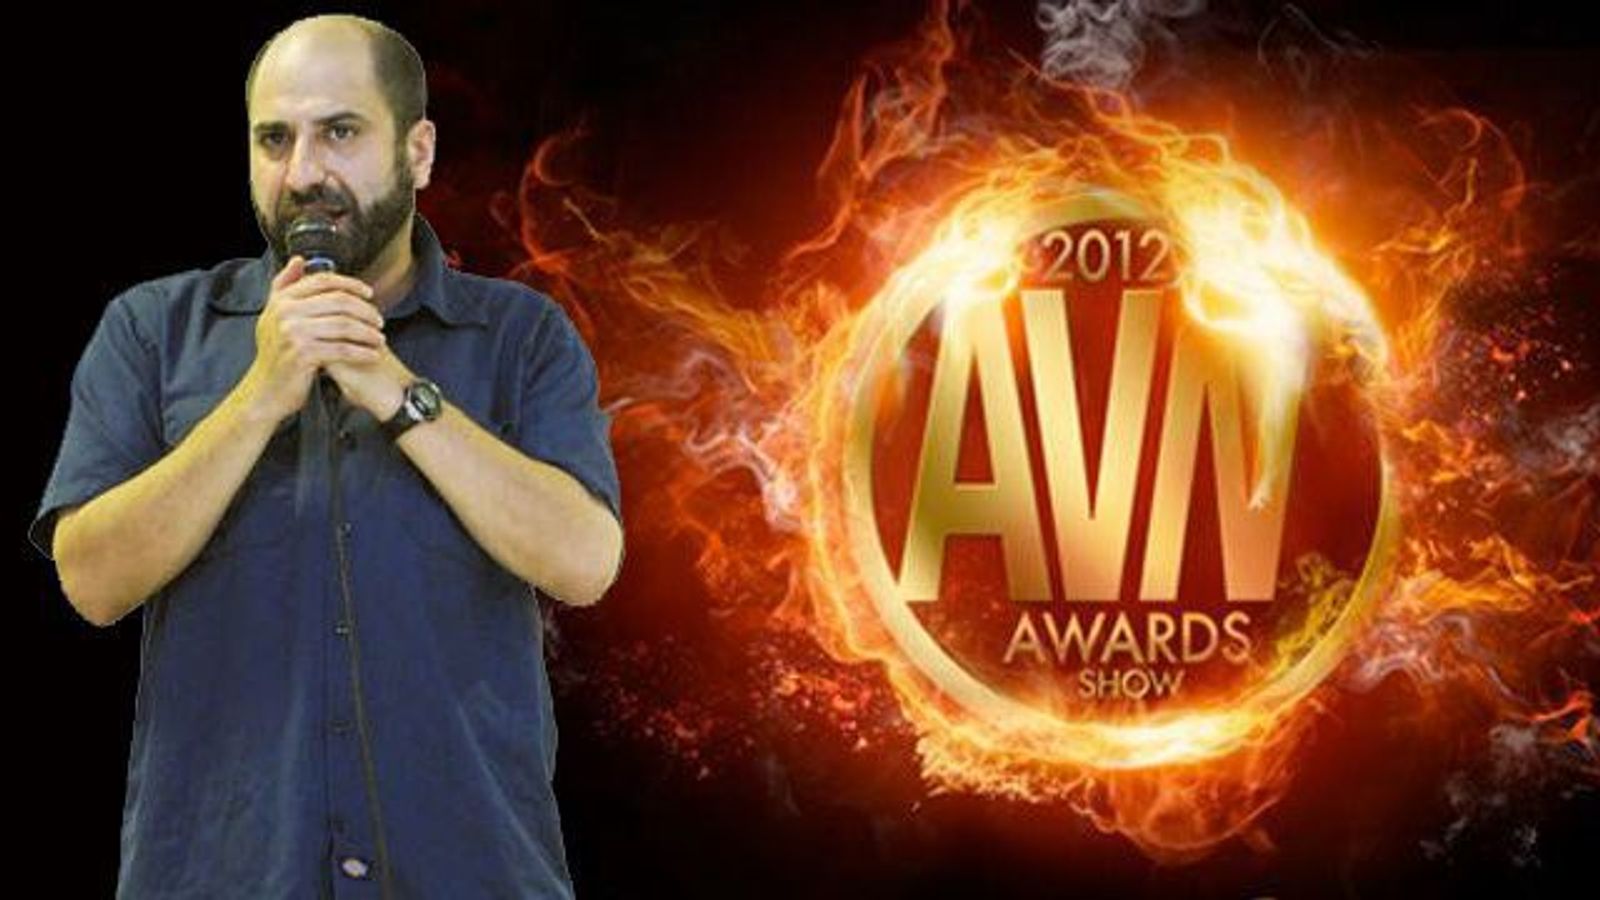 AVN Awards Host Dave Attell Appearing on ‘Conan’ Tonight